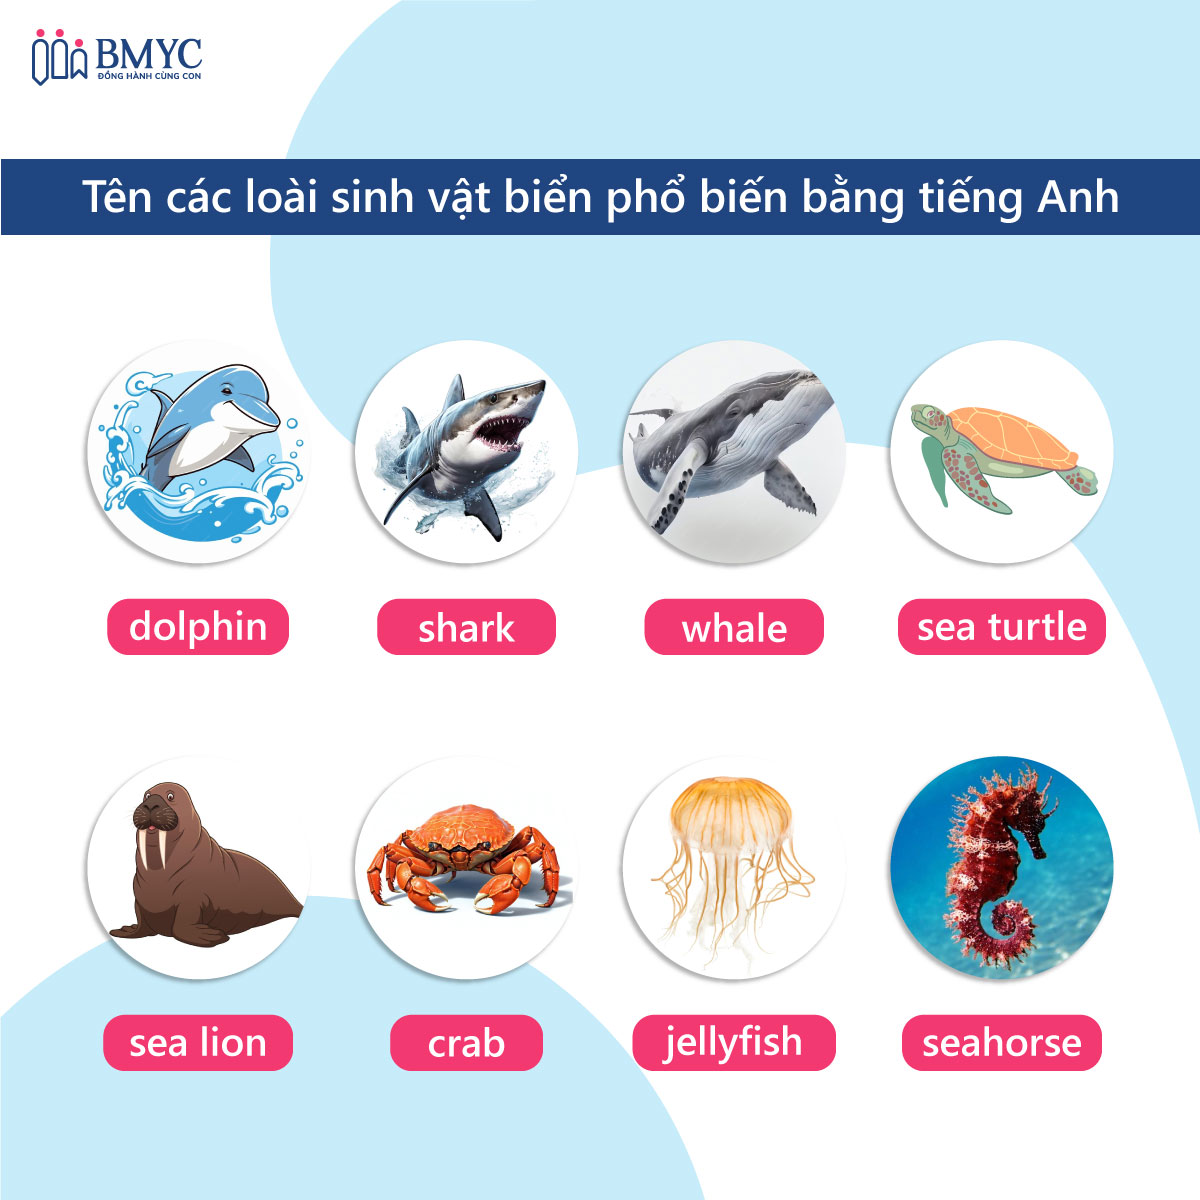 Tên các loài sinh vật biển bằng tiếng Anh - phổ biến